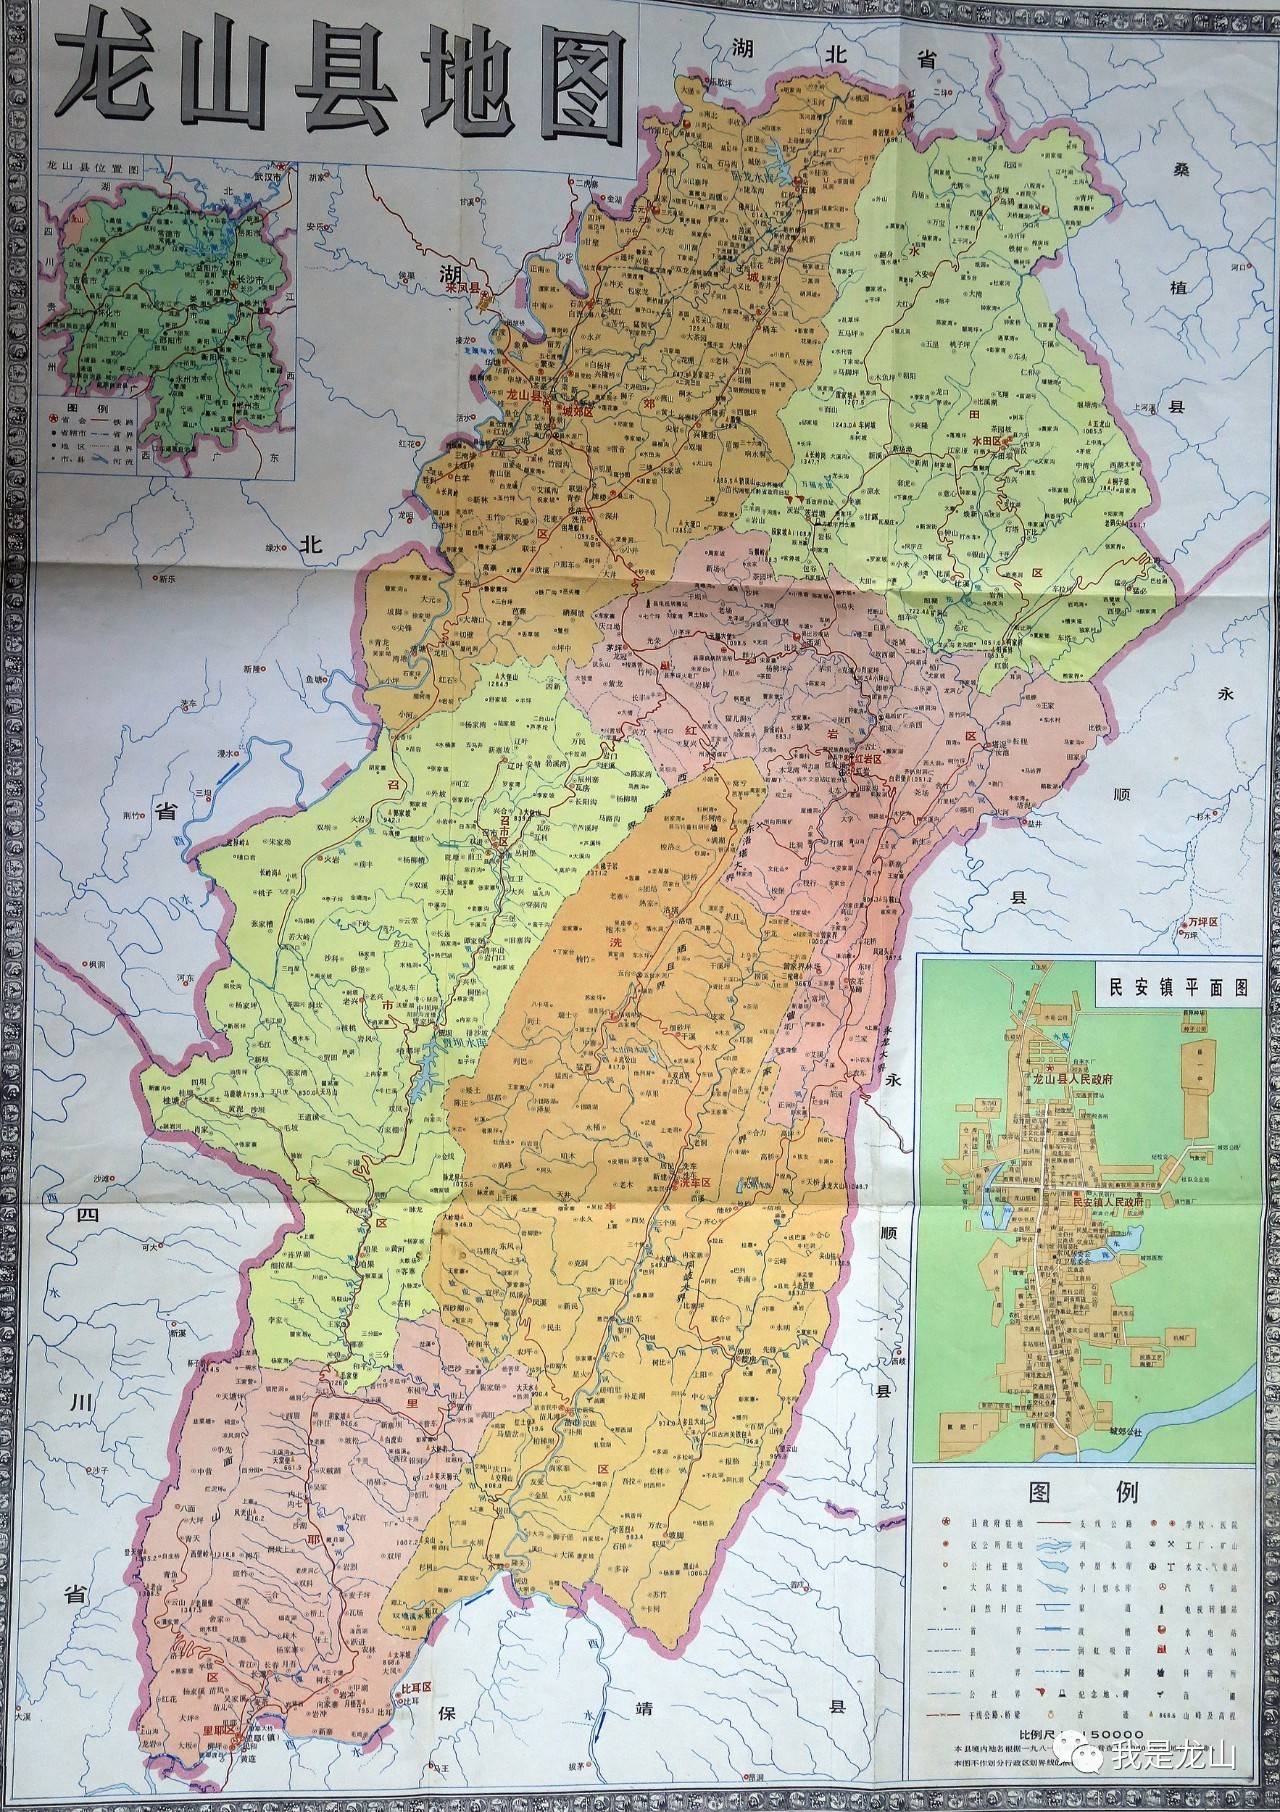 龙海市榜山镇地图图片